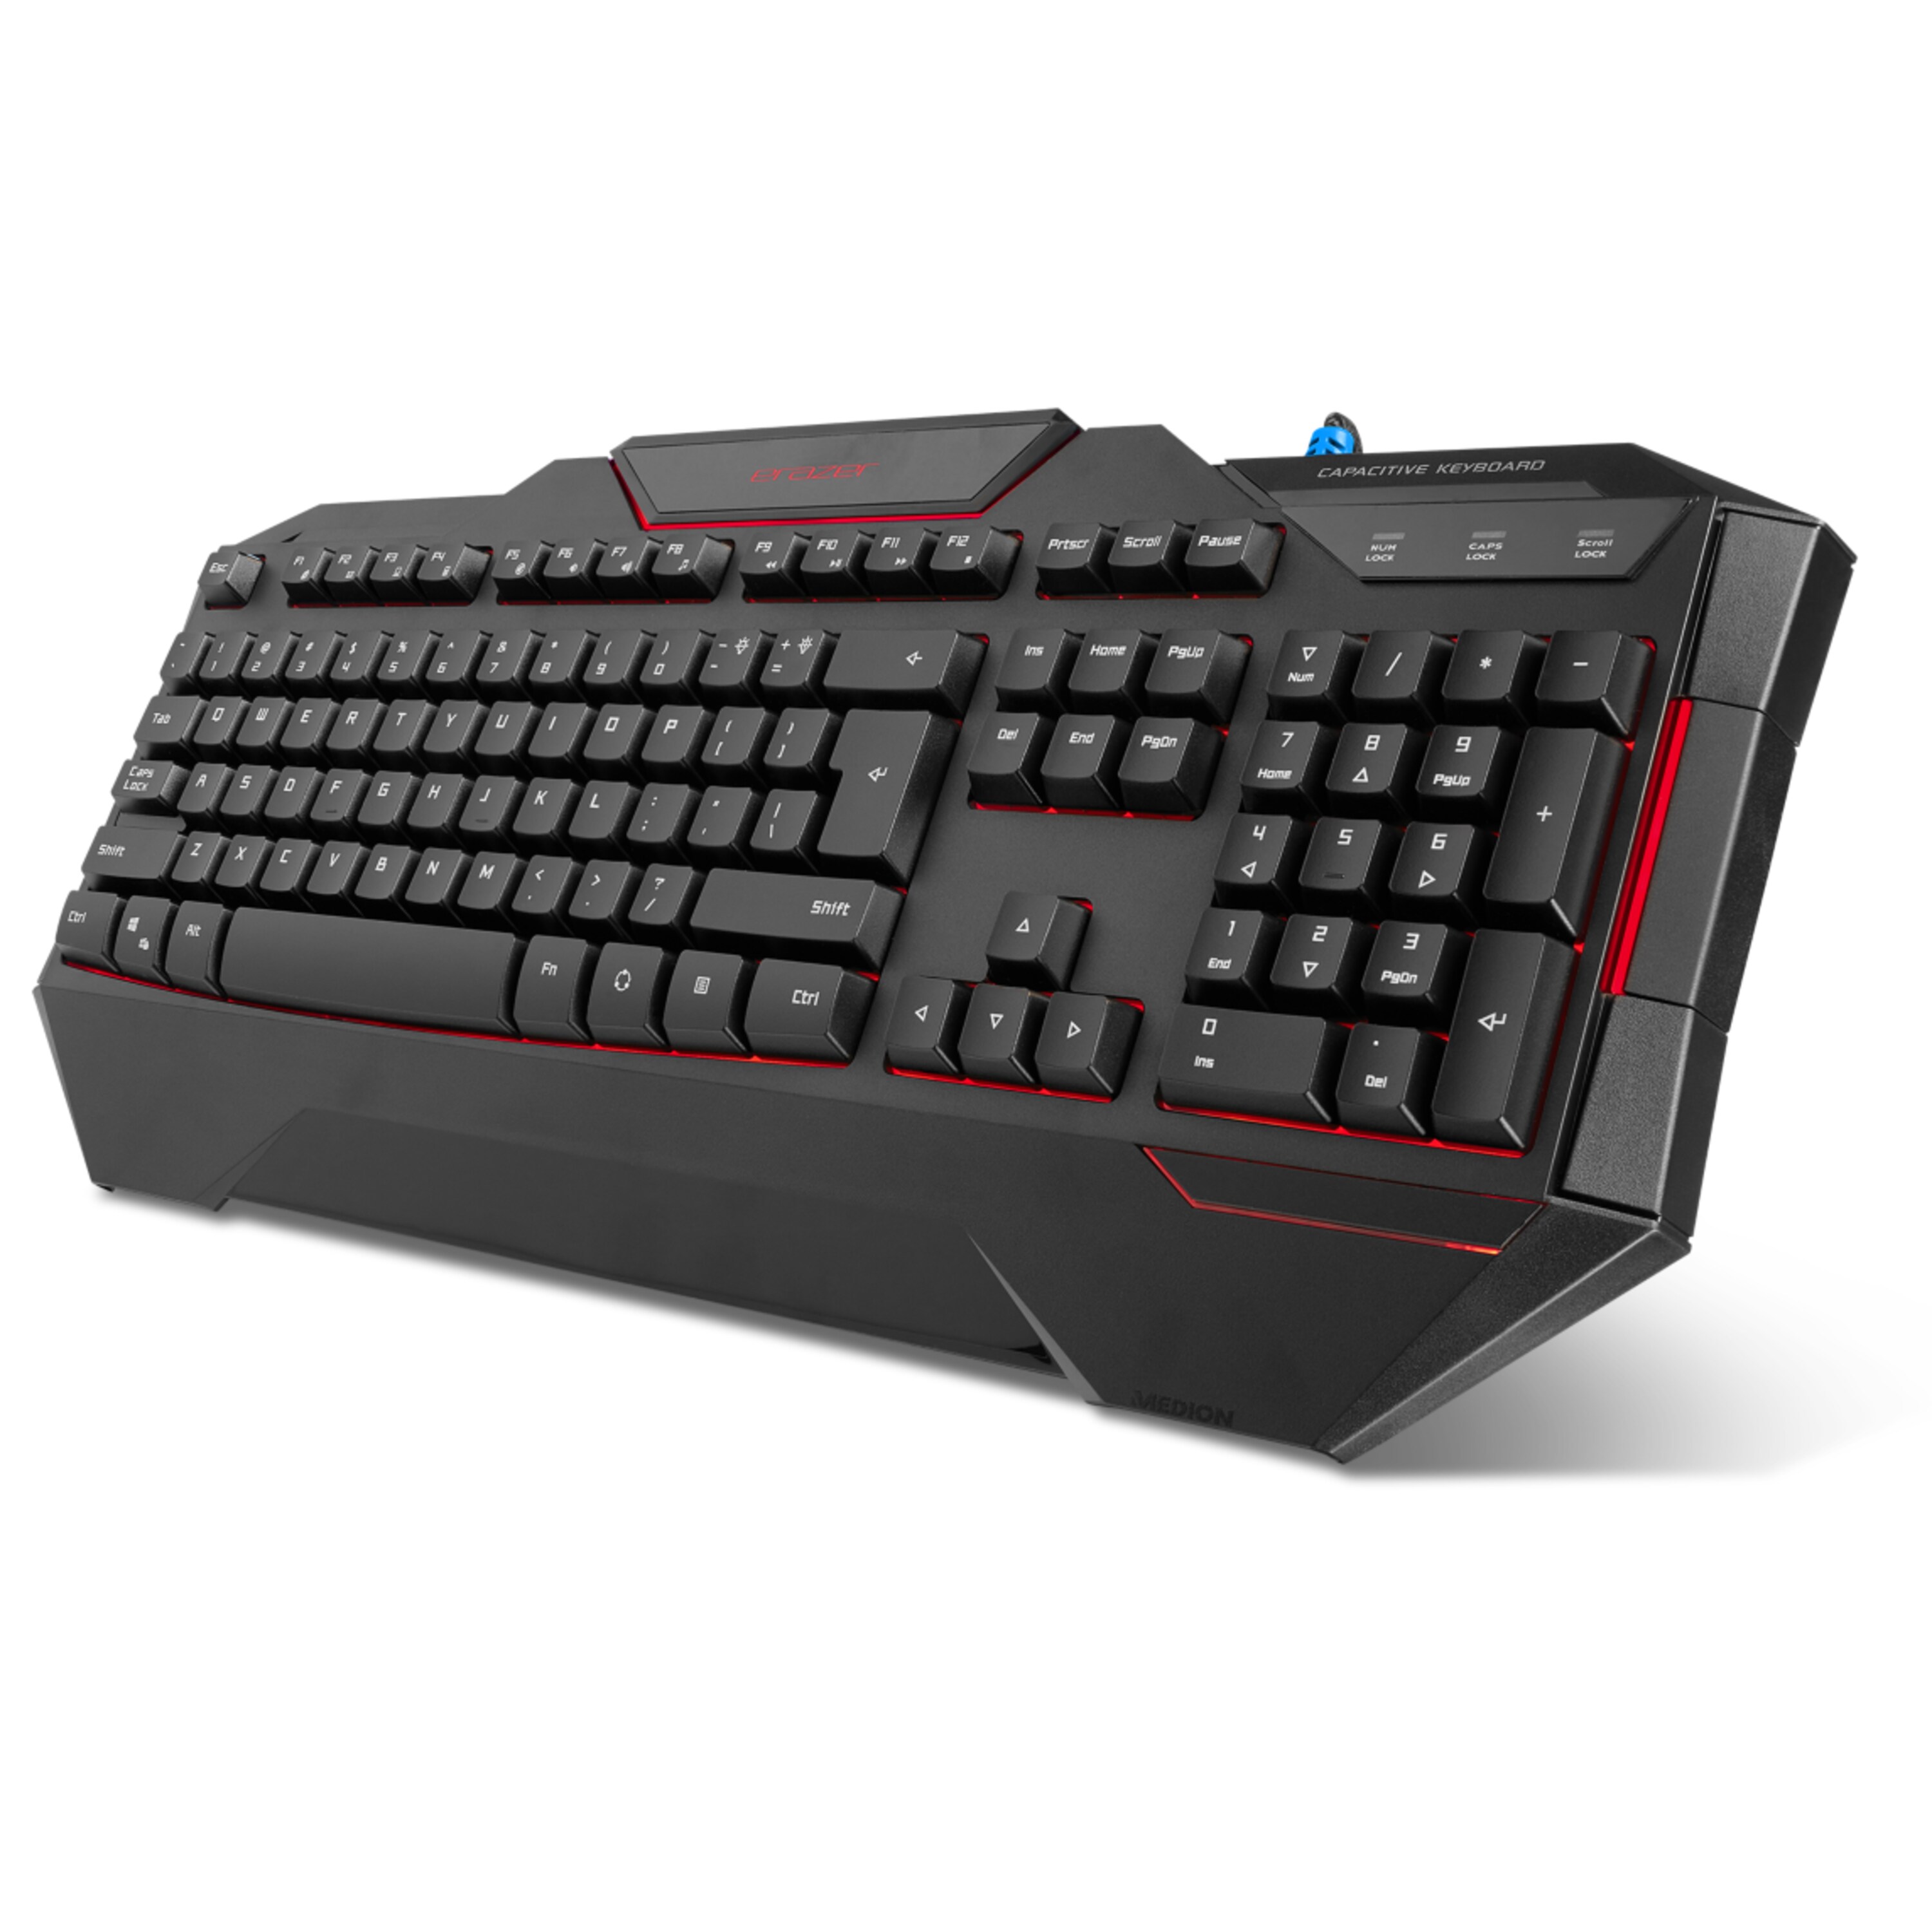 MEDION® ERAZER® X81019 Gaming Tastatur, präzise Tastenreaktion, RGB-Hintergrundbeleuchtung, 24 Anti-Ghosting-Tasten